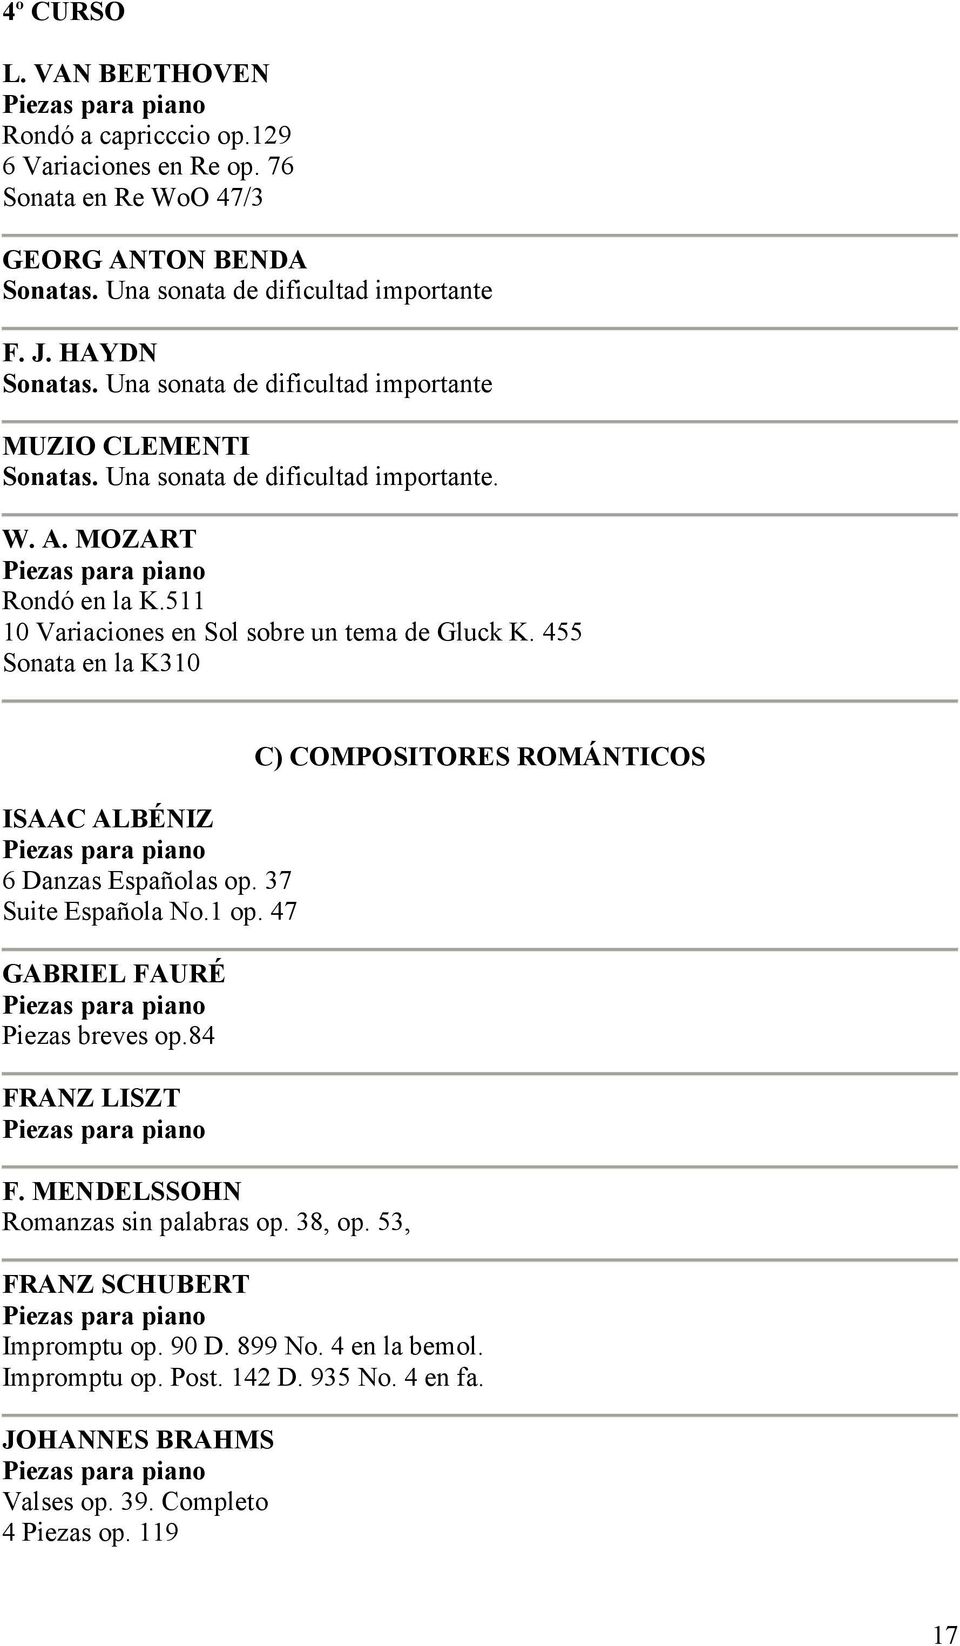 455 Sonata en la K310 ISAAC ALBÉNIZ 6 Danzas Españolas op. 37 Suite Española No.1 op. 47 GABRIEL FAURÉ Piezas breves op.84 FRANZ LISZT F. MENDELSSOHN Romanzas sin palabras op.